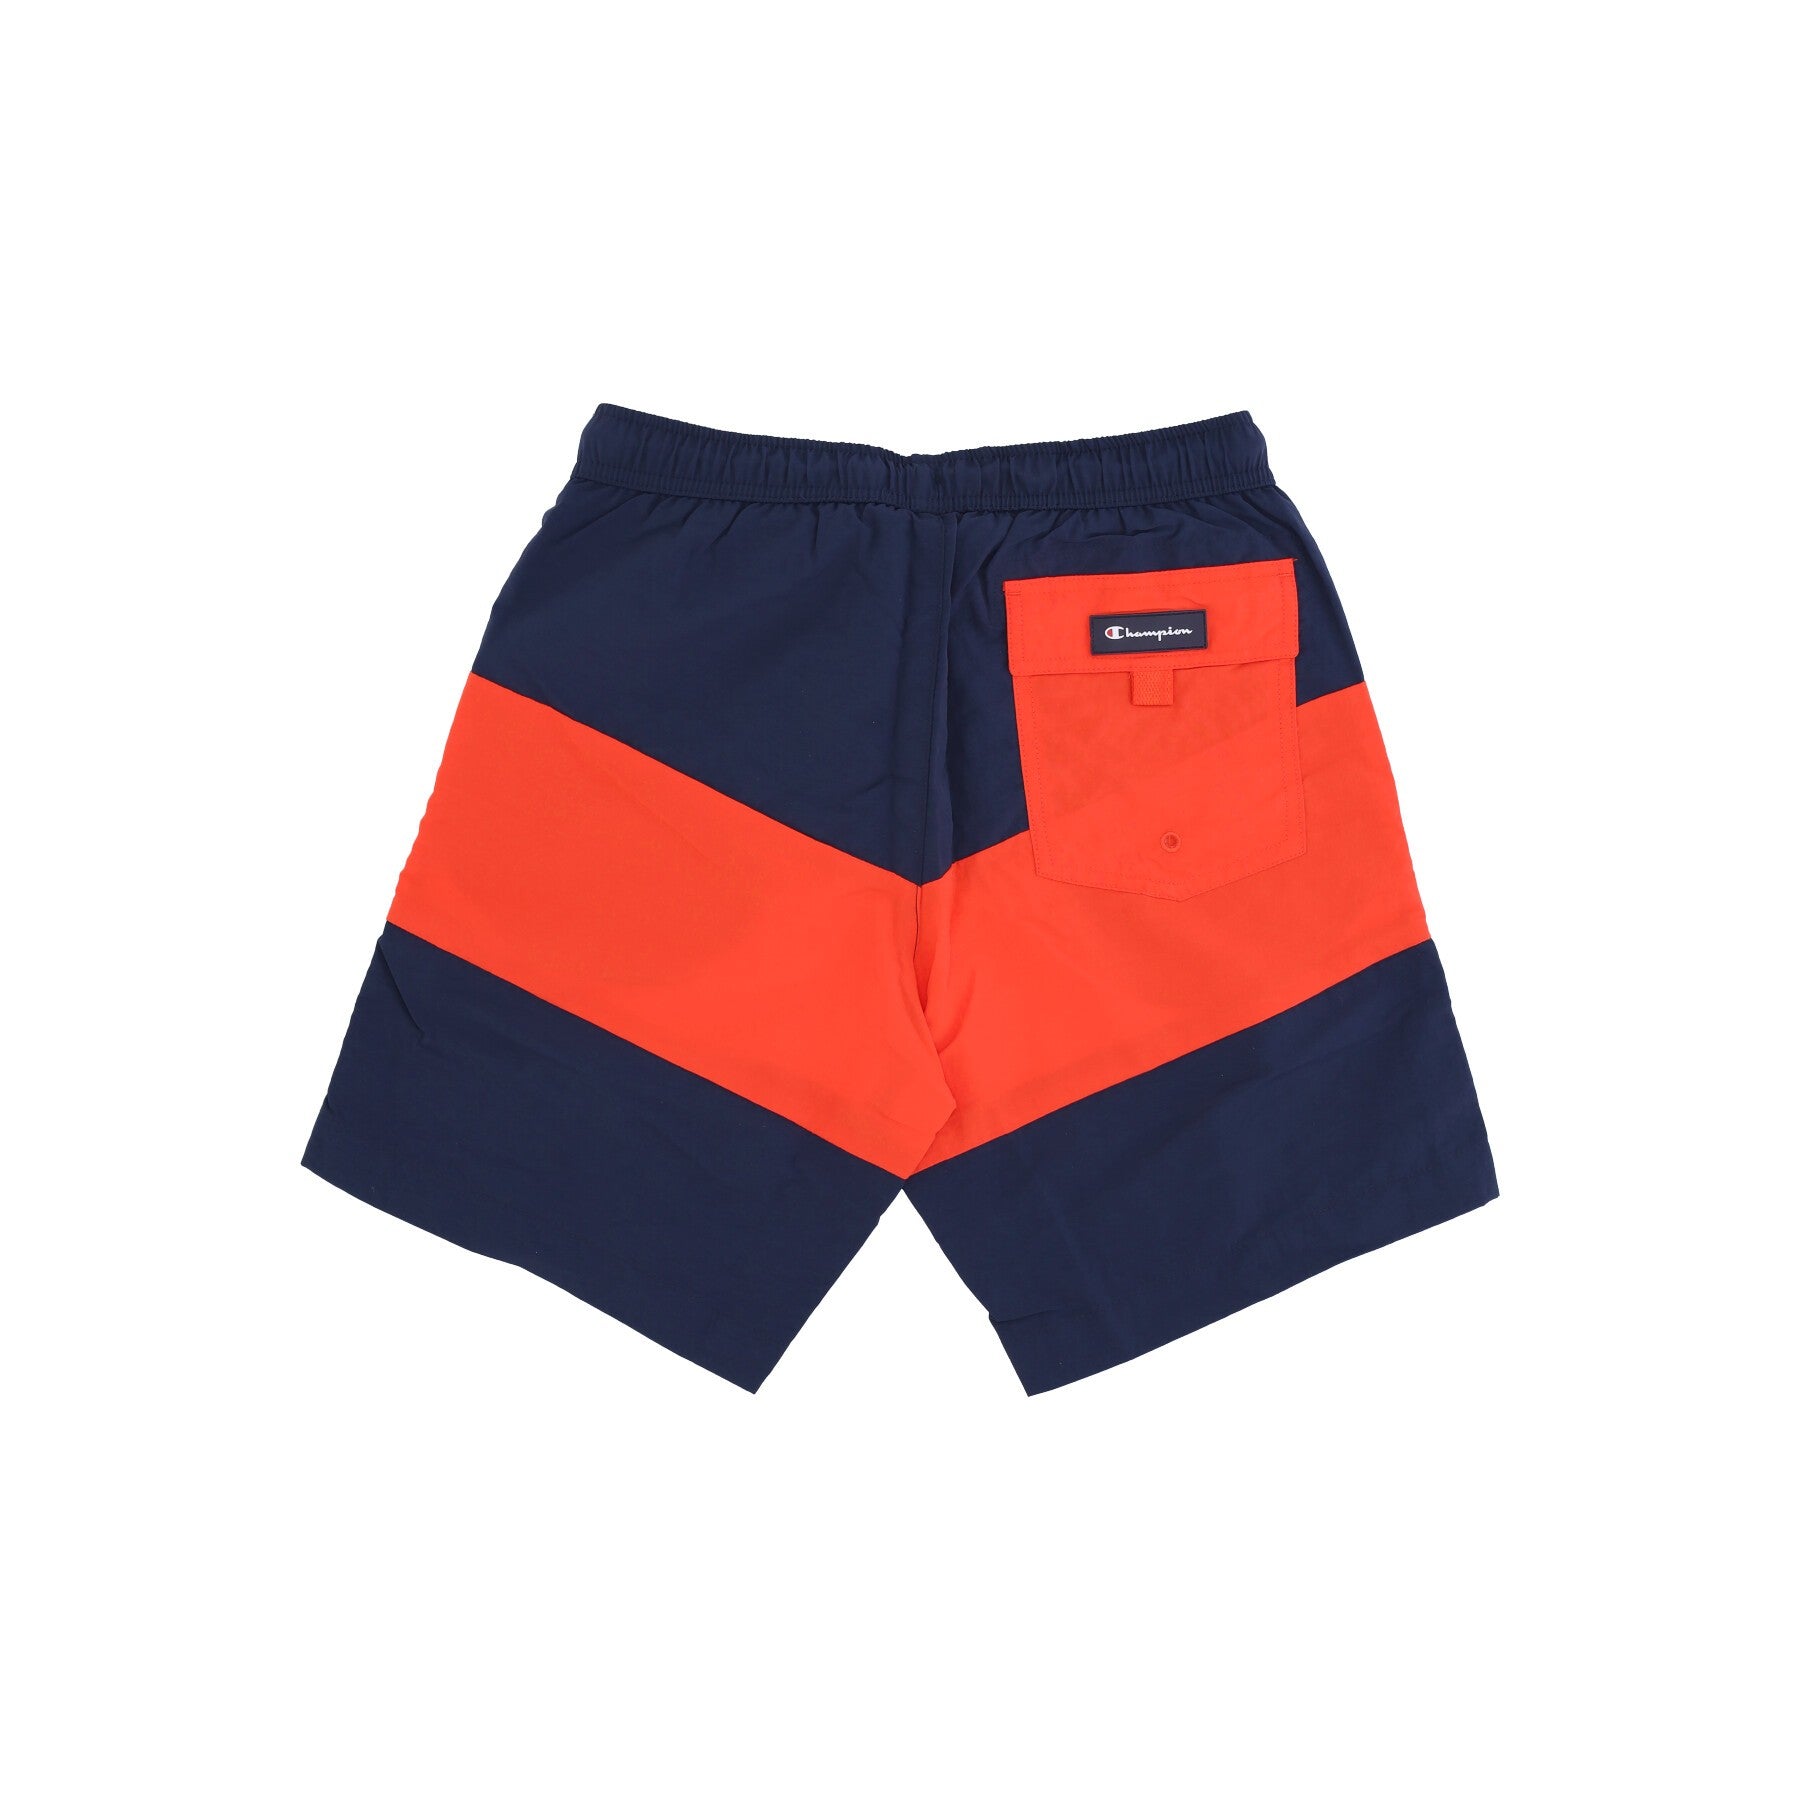 Men's Beachshort Swim Shorts Navy/orange